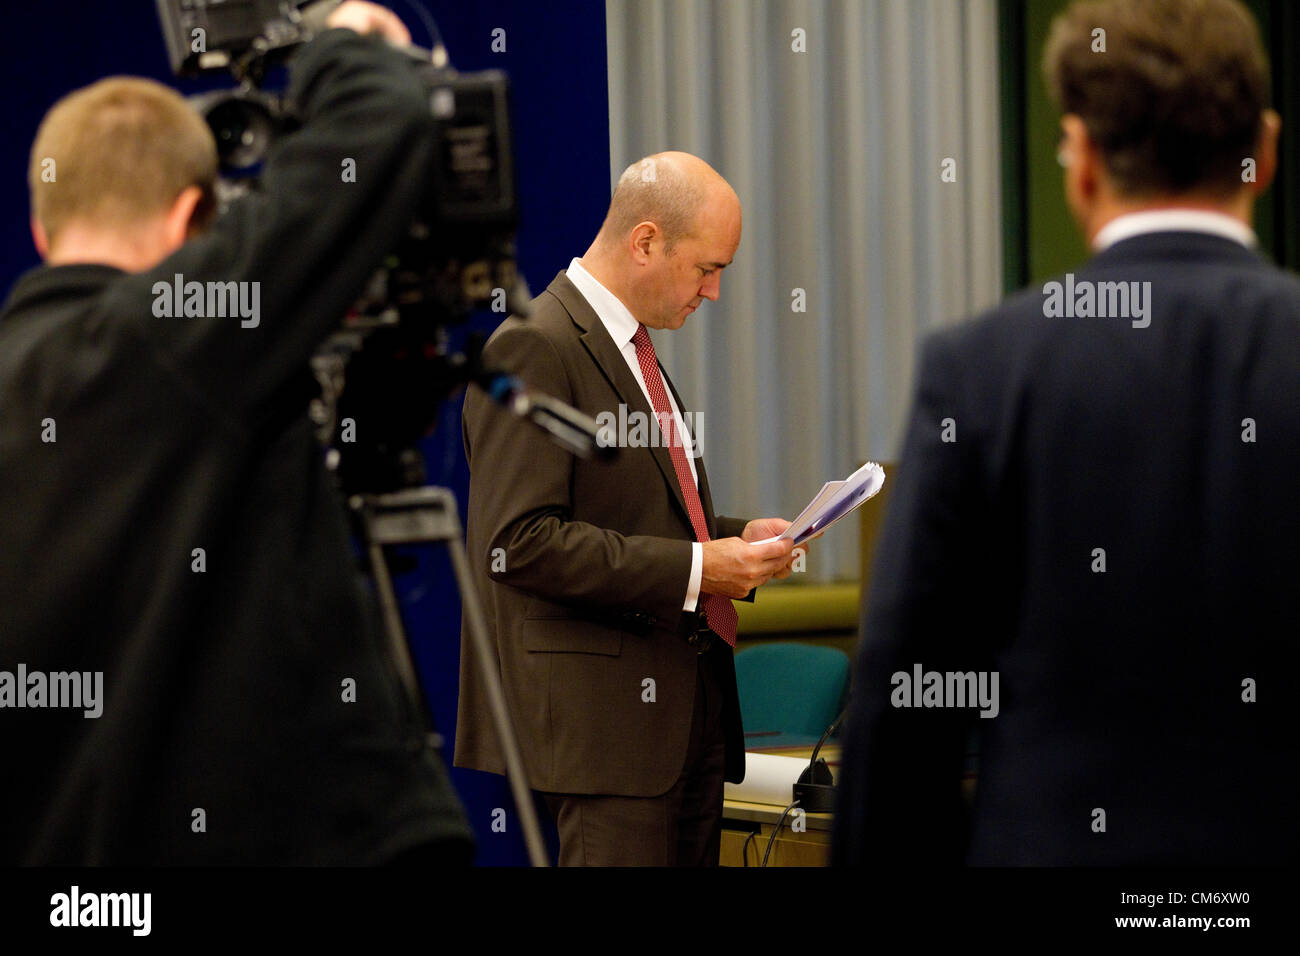 Brüssel, 19. Oktober 2012. Fredrik Reinfeldt, Premierminister von Schweden gibt eine Pressekonferenz in den frühen Morgenstunden des Freitag Vormittag auf der Tagung des Europäischen Rates in Brüssel, Justus-Lipsius-Gebäude. Foto: Jeff Gilbert. 19.10.2012. Brüssel, Belgien. Stockfoto